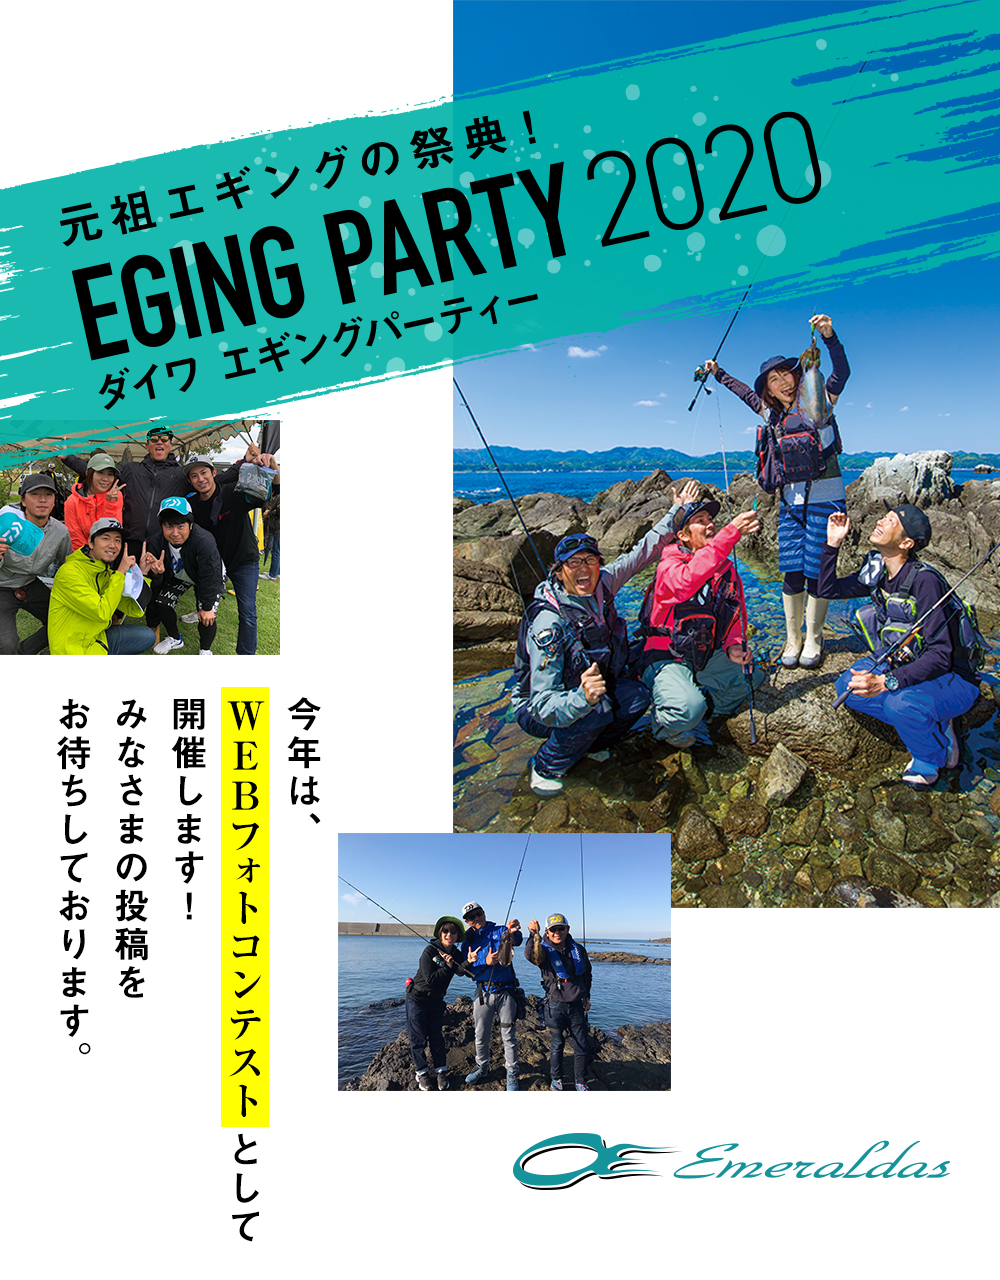 オンラインエギングパーティー2020 / EGING PARTY 2020